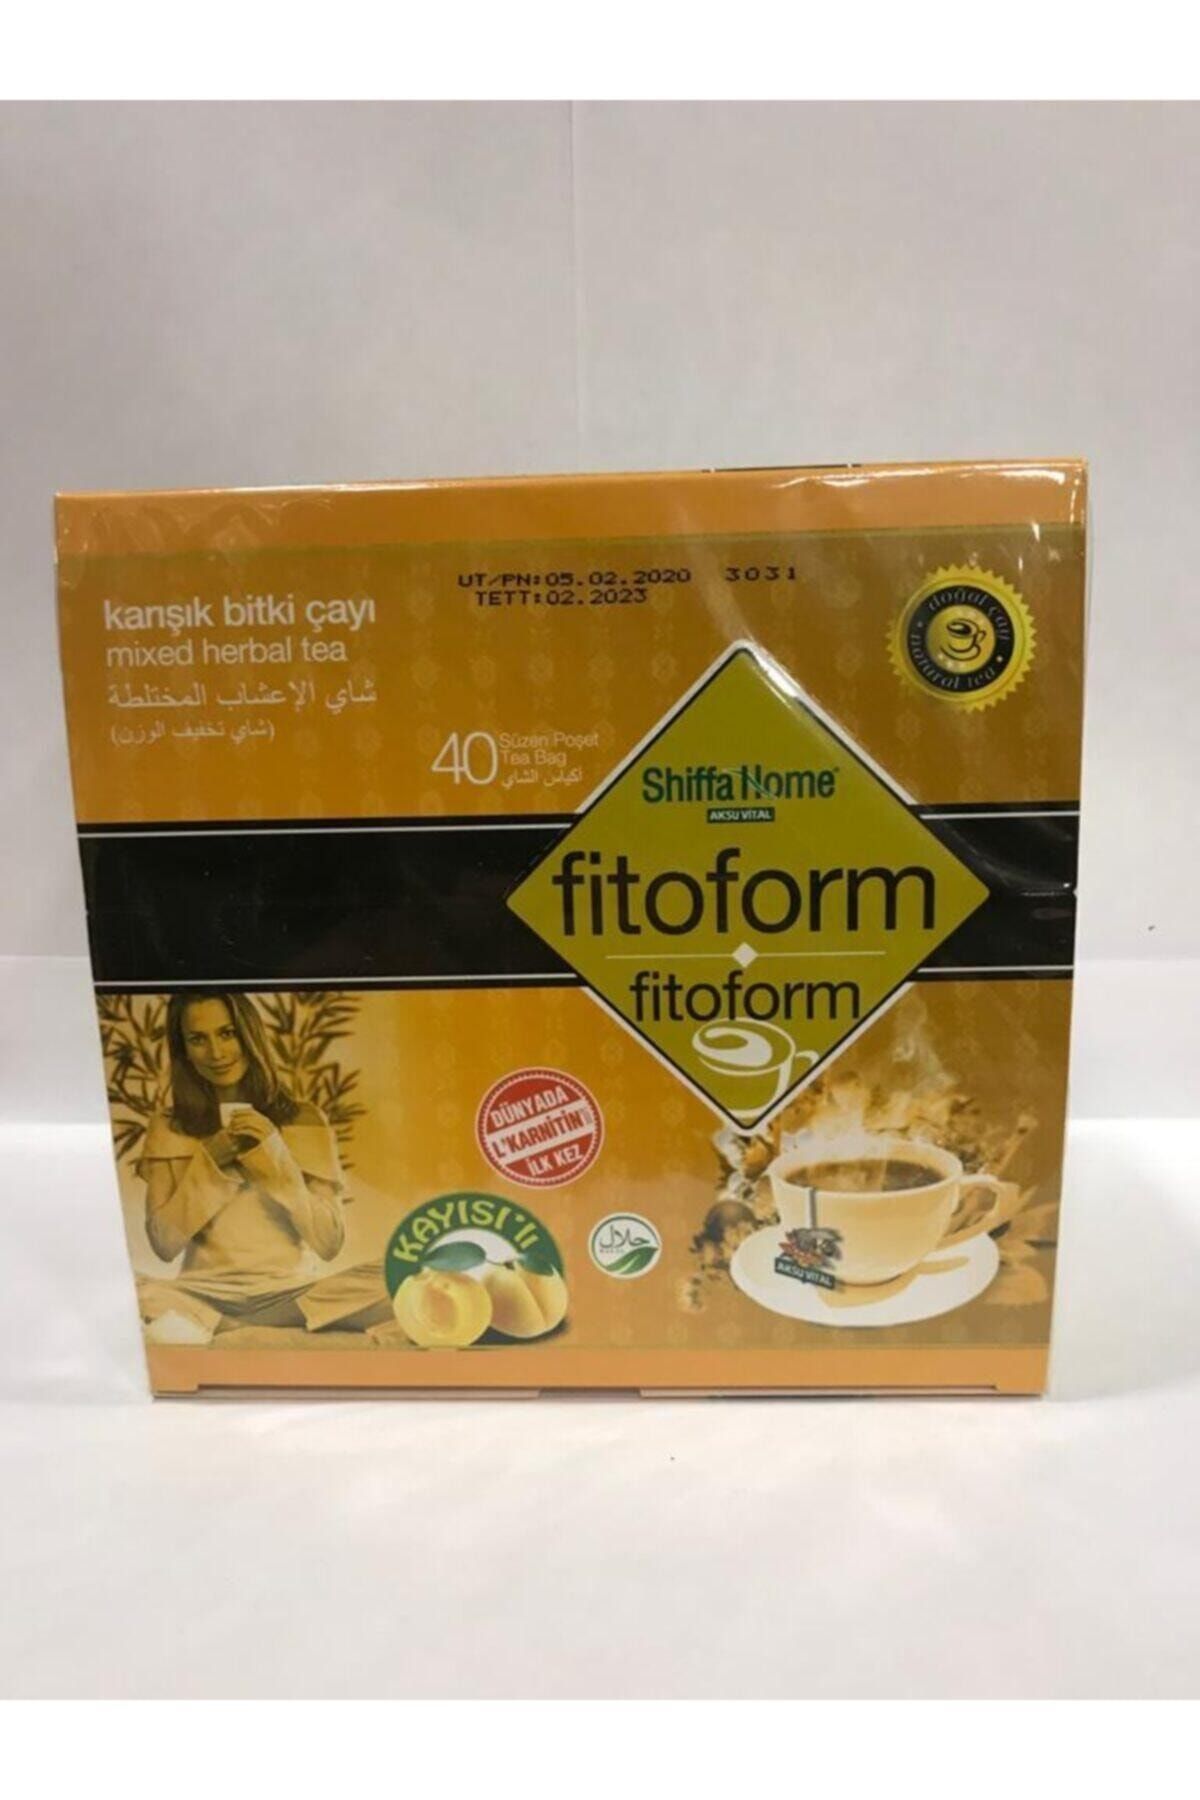 Aksu Vital Shiffa Home Fitoform Kayısılı Çay 40 lı